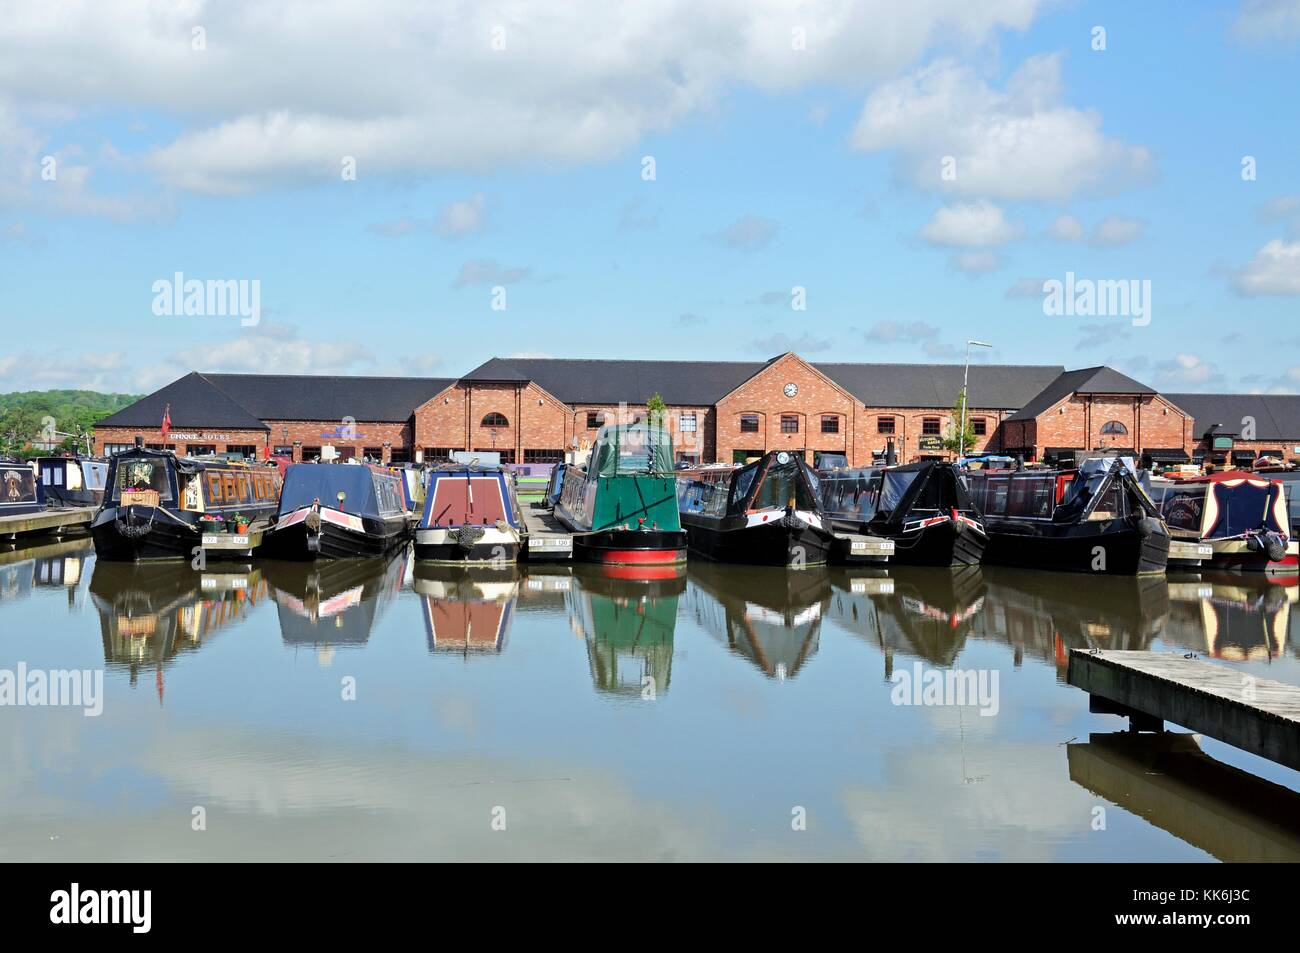 Narrowboats sur leurs amarres dans le bassin du canal, avec des magasins, bars et restaurants à l'arrière, barton marina, barton-under-needwood, Staffordshire, en Banque D'Images